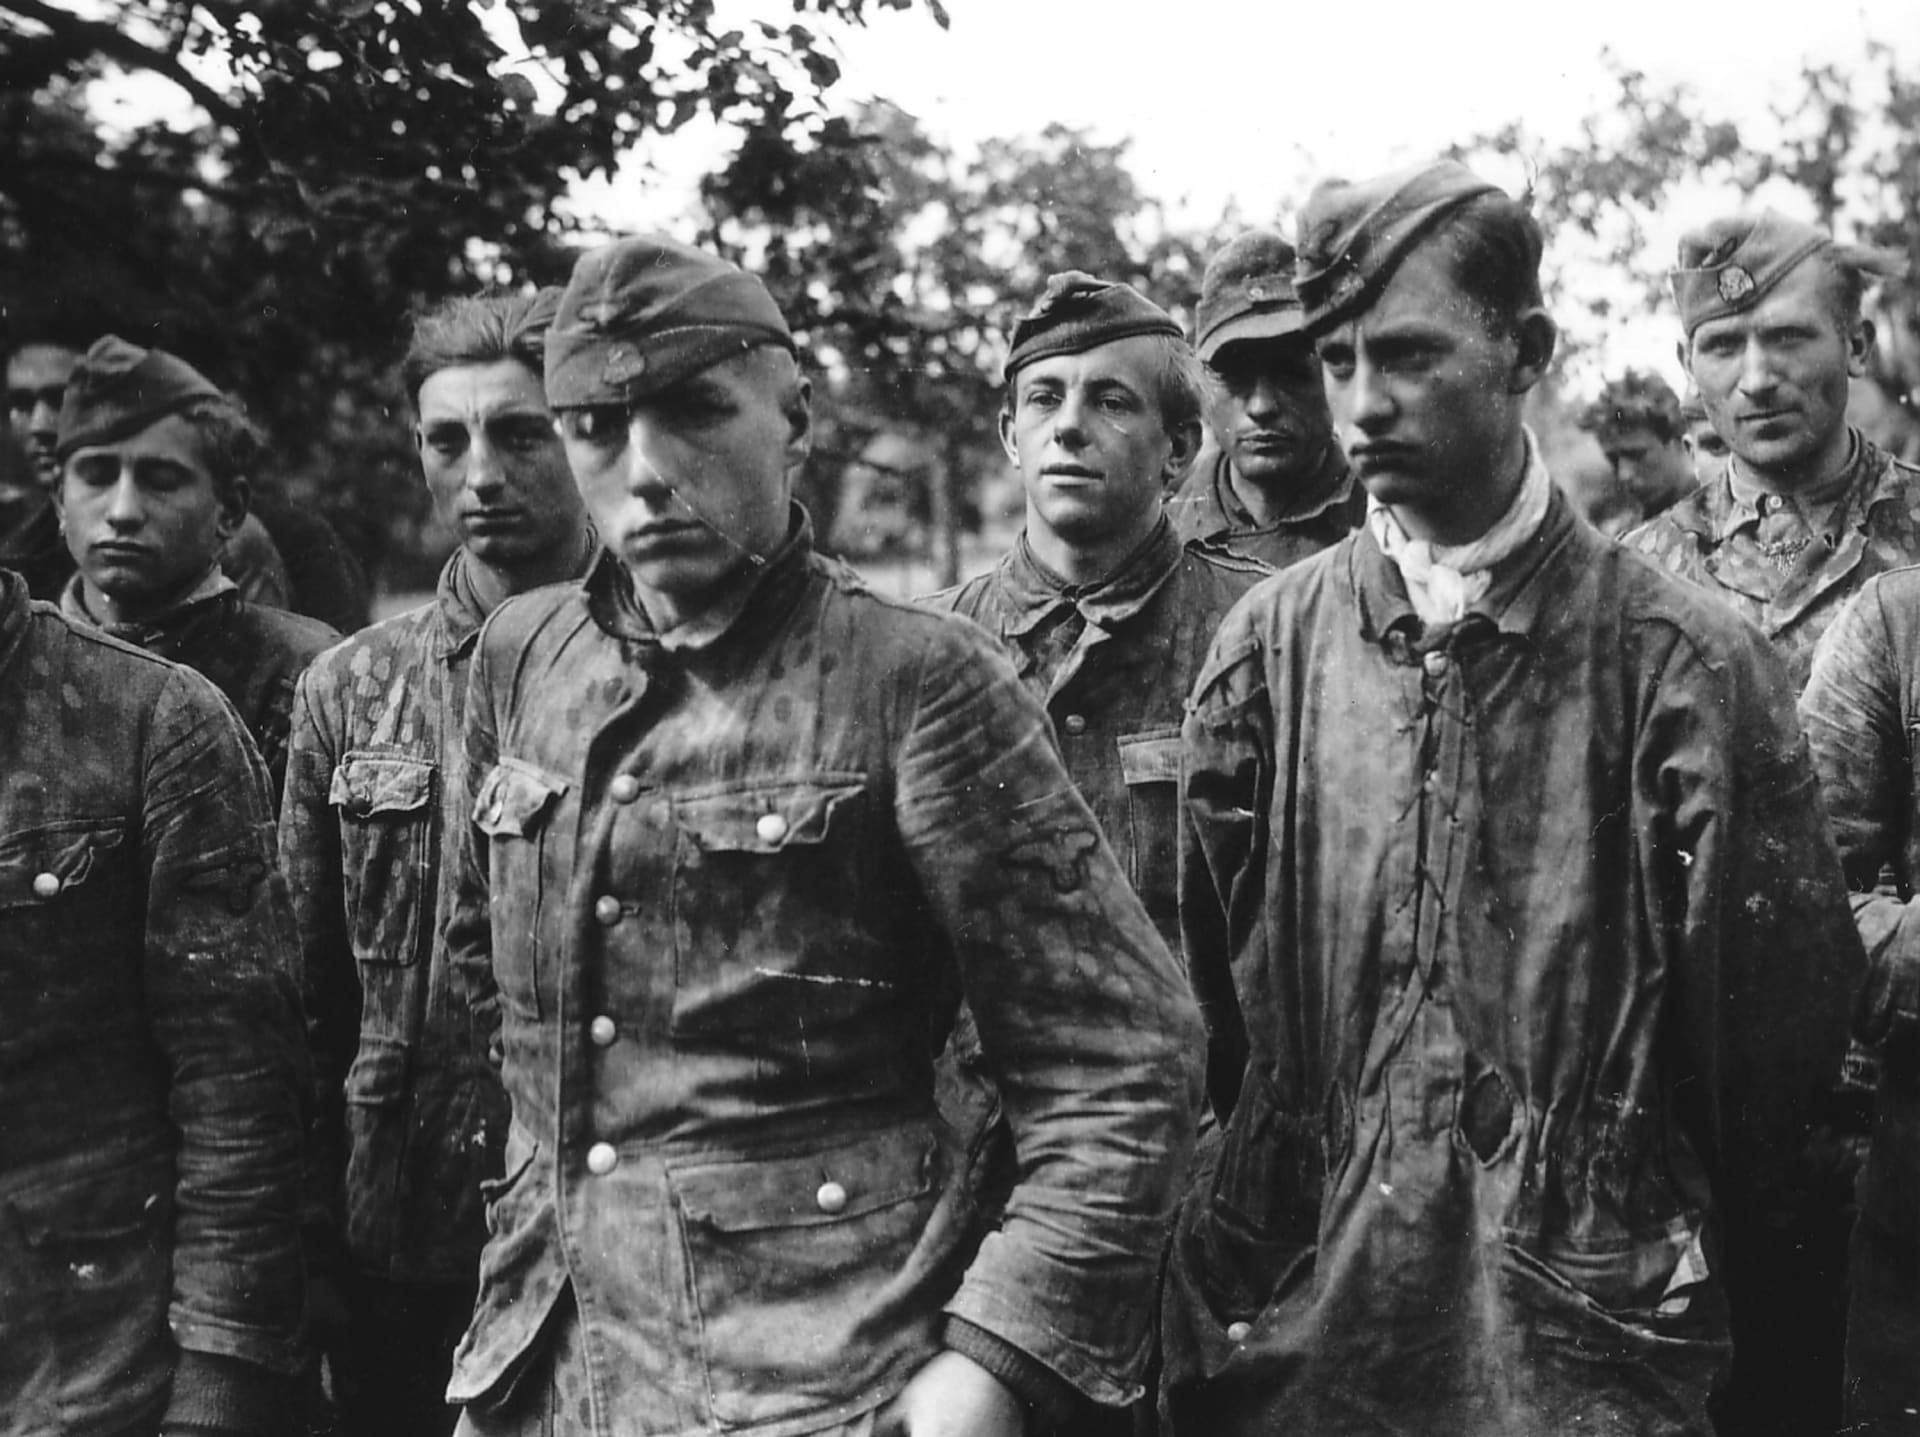 Po podepsání kapitulace Německa se vojáci wehrmachtu snažili proniknout ke spojeneckým liniím